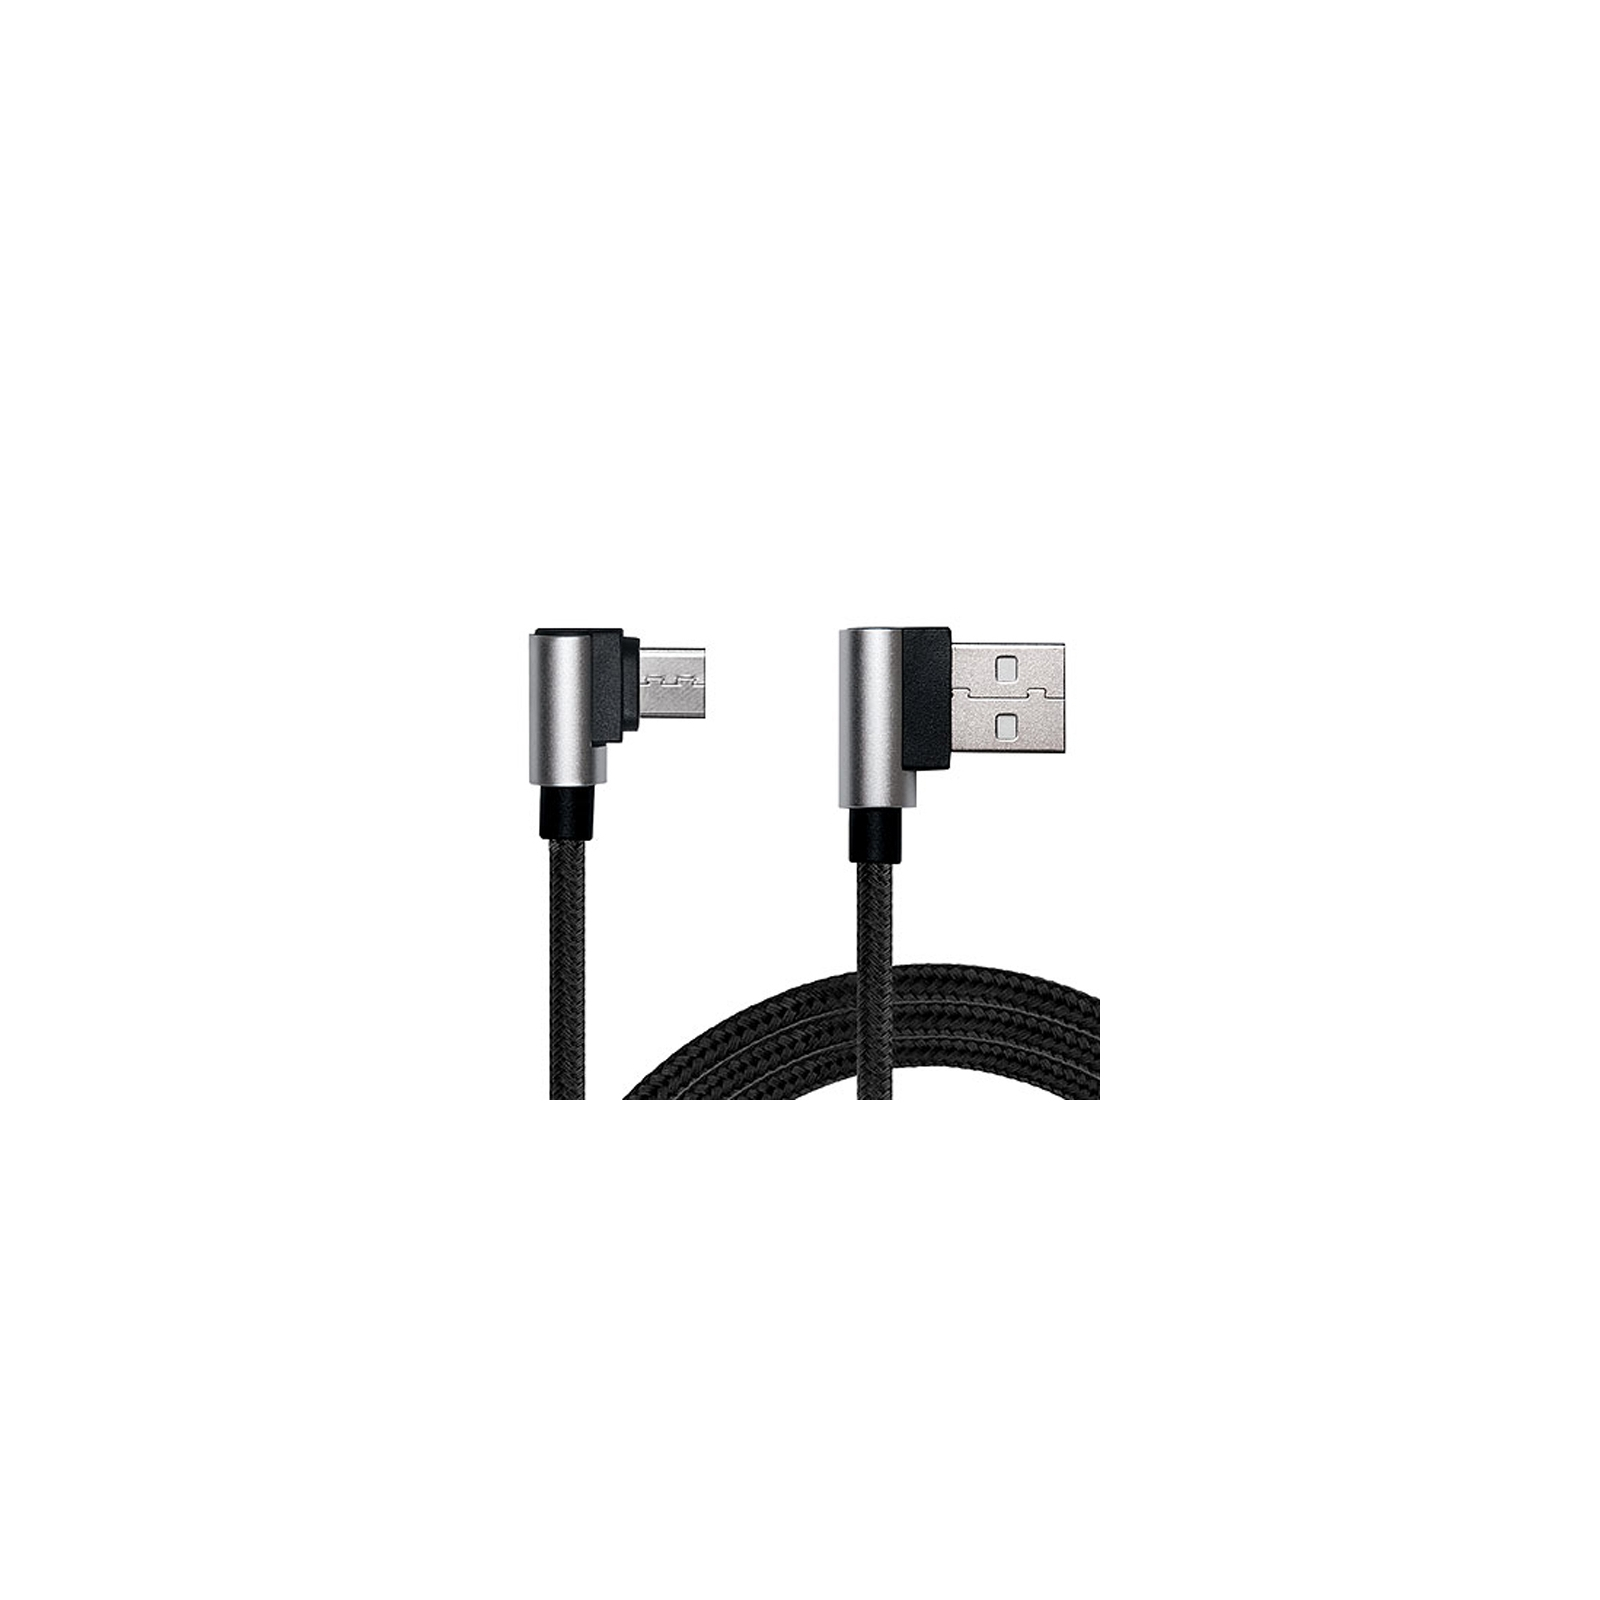 Дата кабель USB 2.0 AM to Type-C 1.0m Premium black REAL-EL (EL123500032) изображение 3